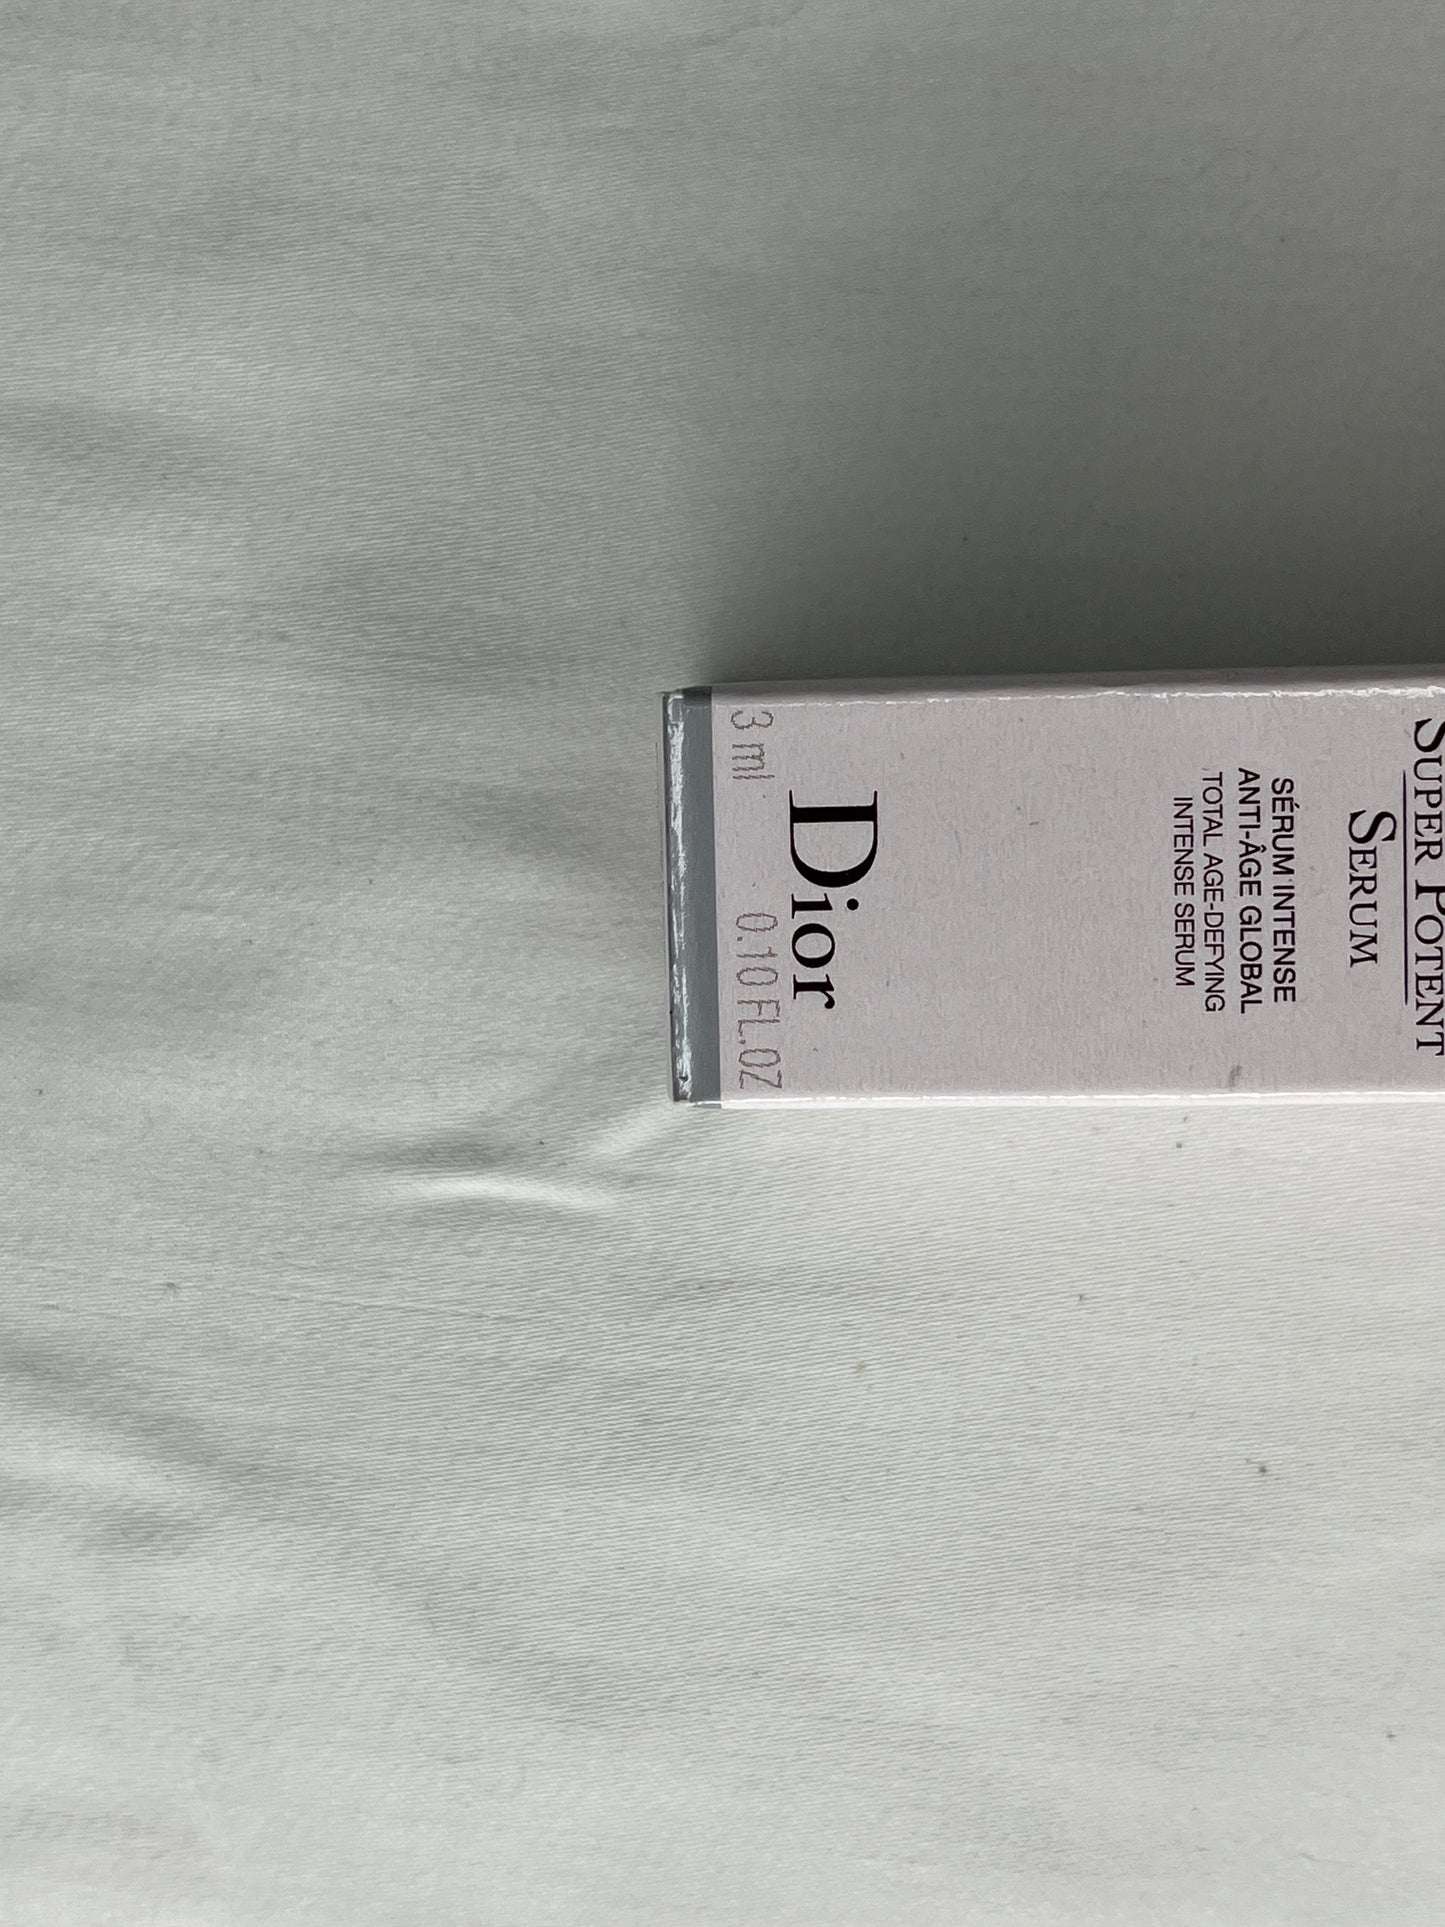 Dior Capture Totale Super Potent Serum SKU 000451